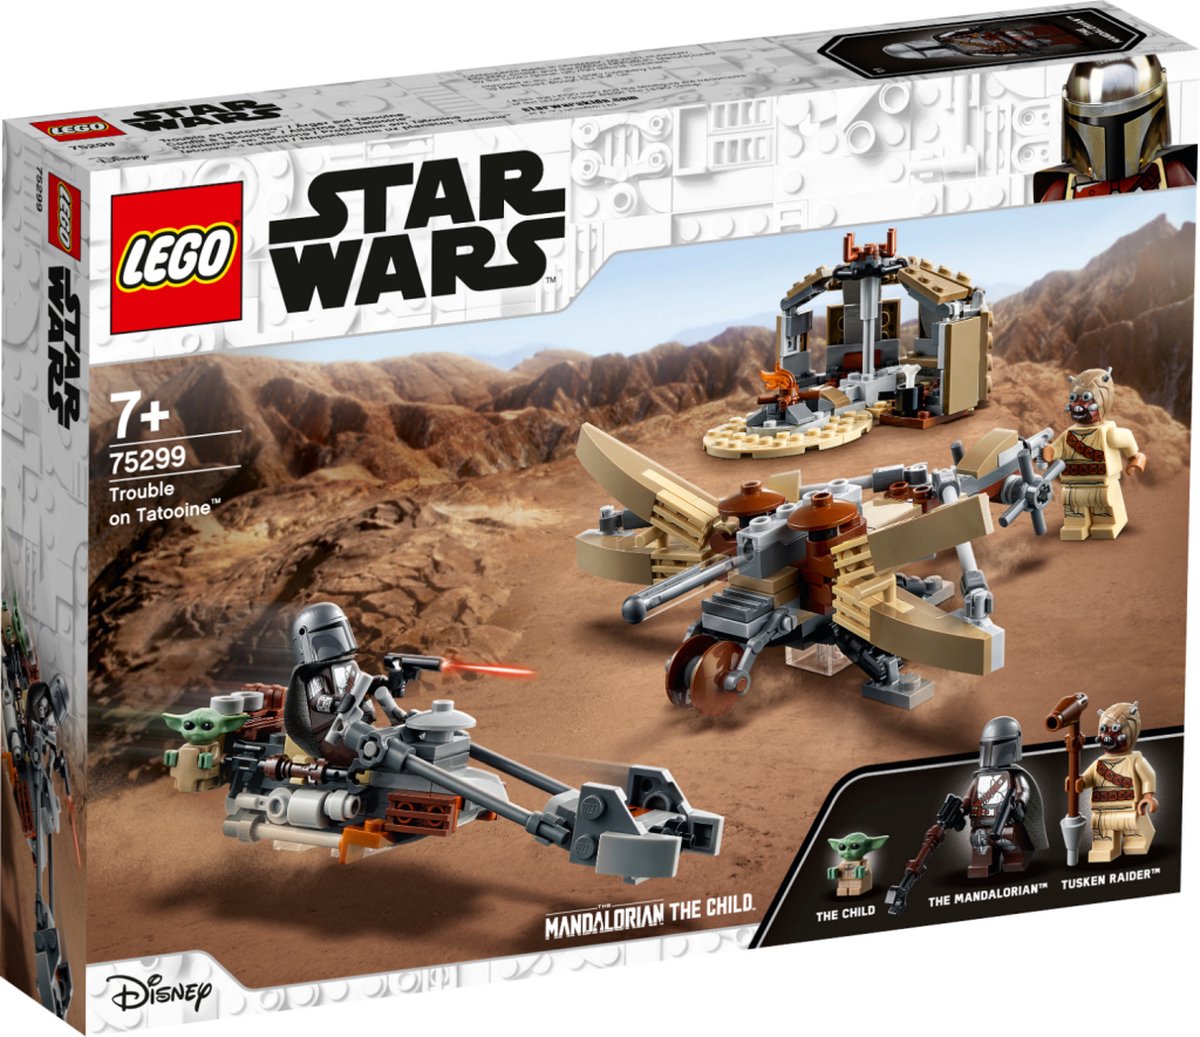 LEGO Star Wars : Le livre de Boba Fett - Le chasseur N-1 du Mandalorien  75325 - Jeu de construction pour les enfants des 9 ans